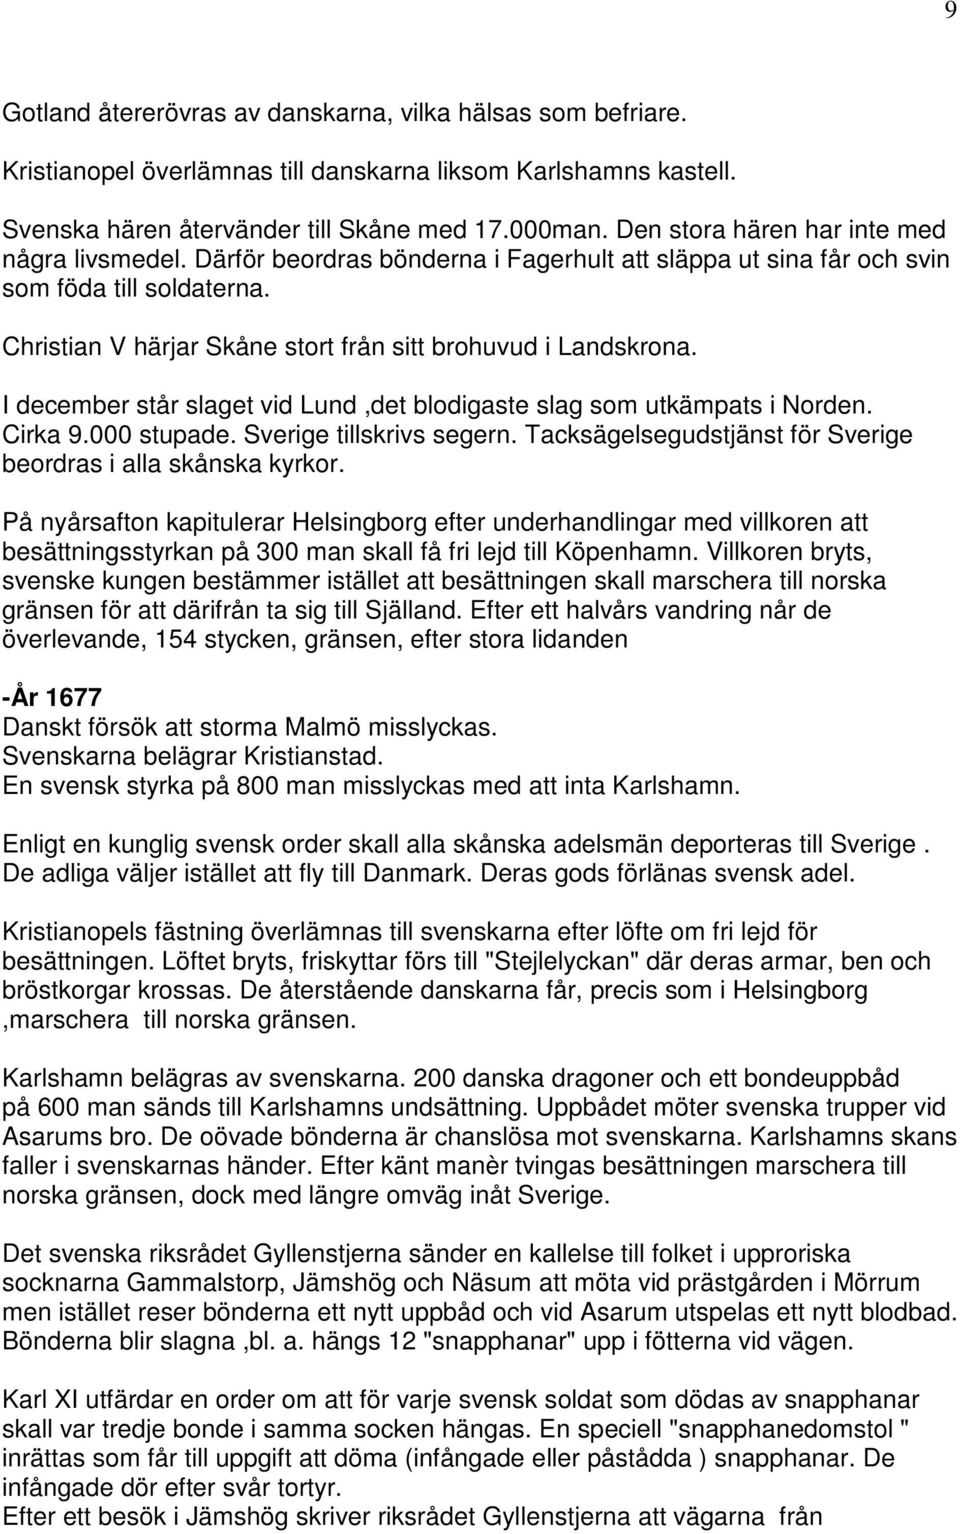 Christian V härjar Skåne stort från sitt brohuvud i Landskrona. I december står slaget vid Lund,det blodigaste slag som utkämpats i Norden. Cirka 9.000 stupade. Sverige tillskrivs segern.